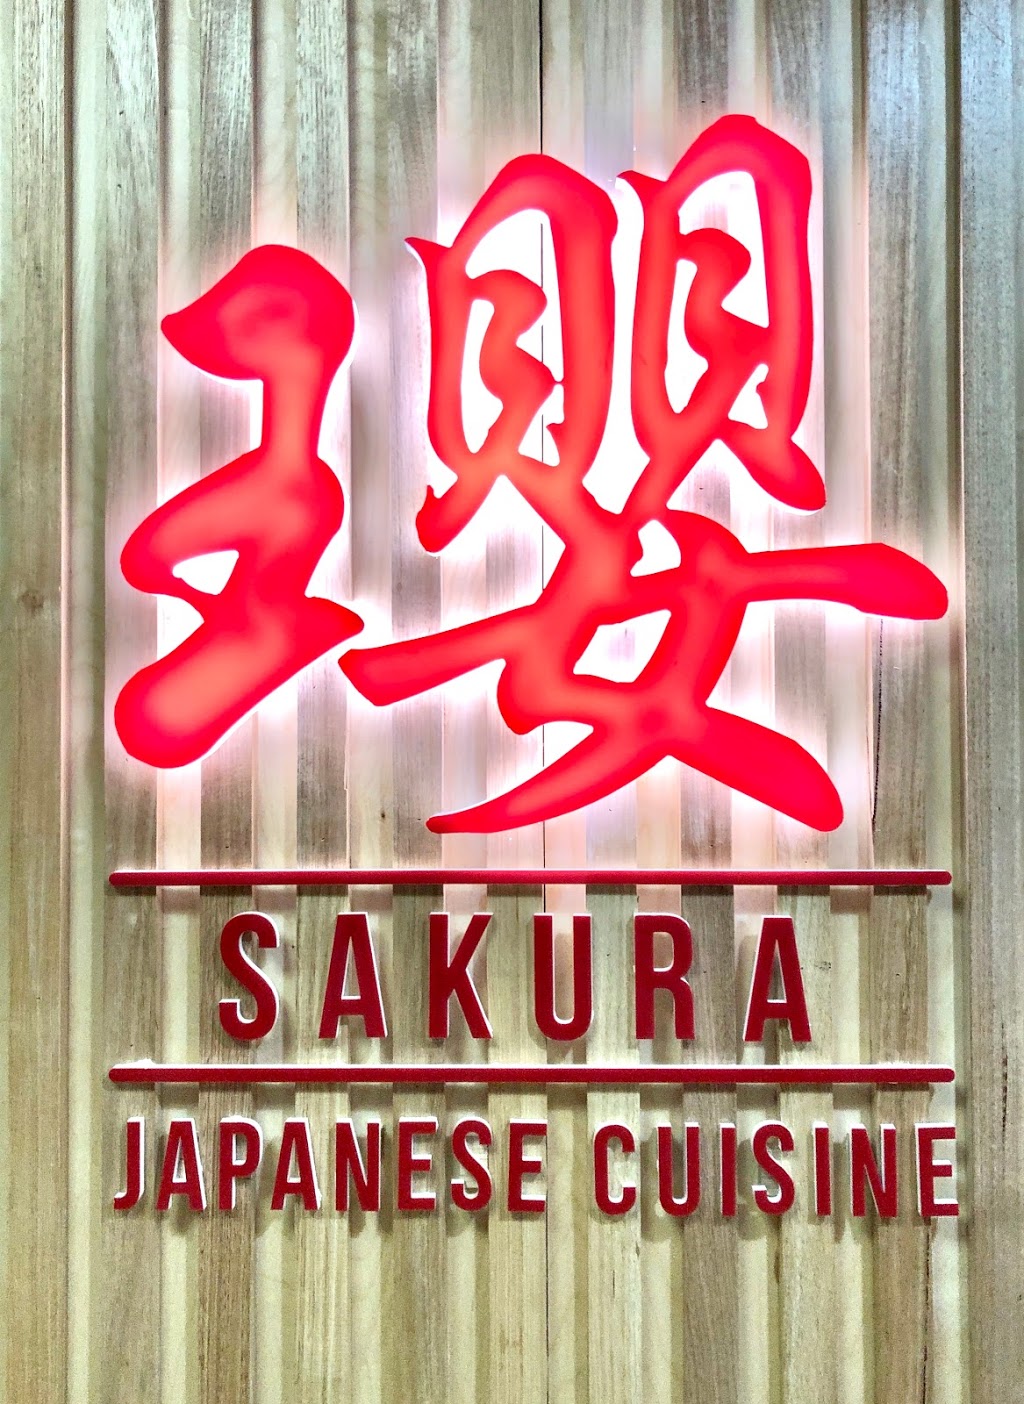 Sakura Japanese Cuisine | restaurant | Shop 19A, Kings Langley Shopping Centre, Kings Langley NSW 2147, Australia | 0401888206 OR +61 401 888 206